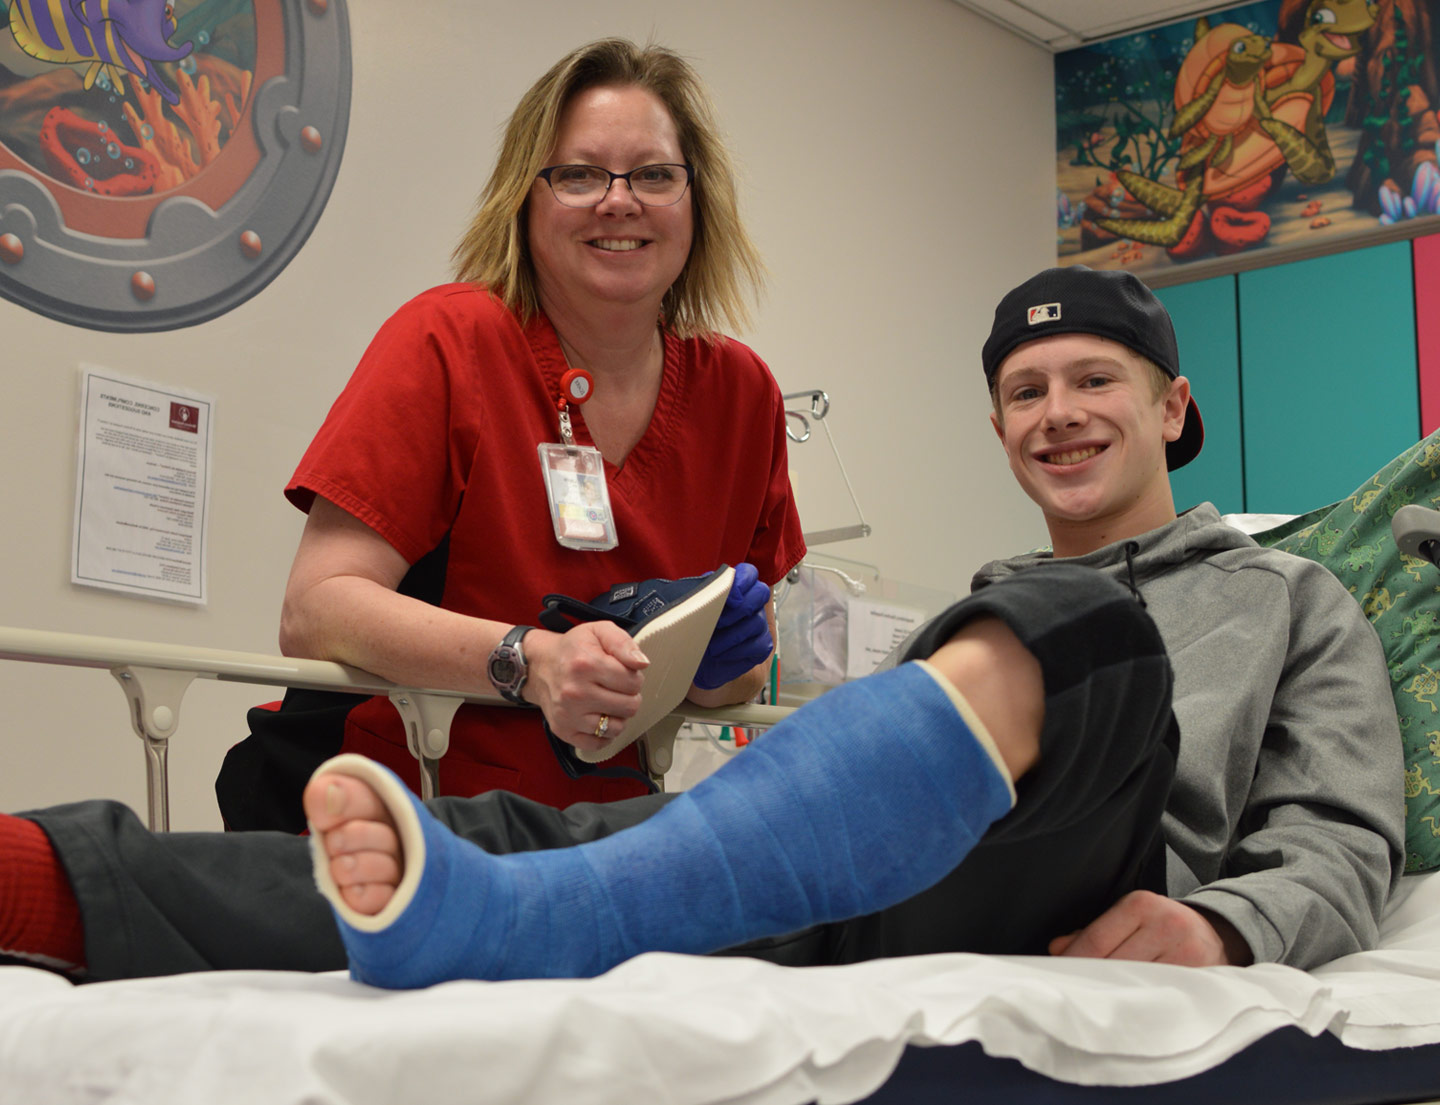 Patient avec fracture de la jambe dans le plâtre avec une infirmière